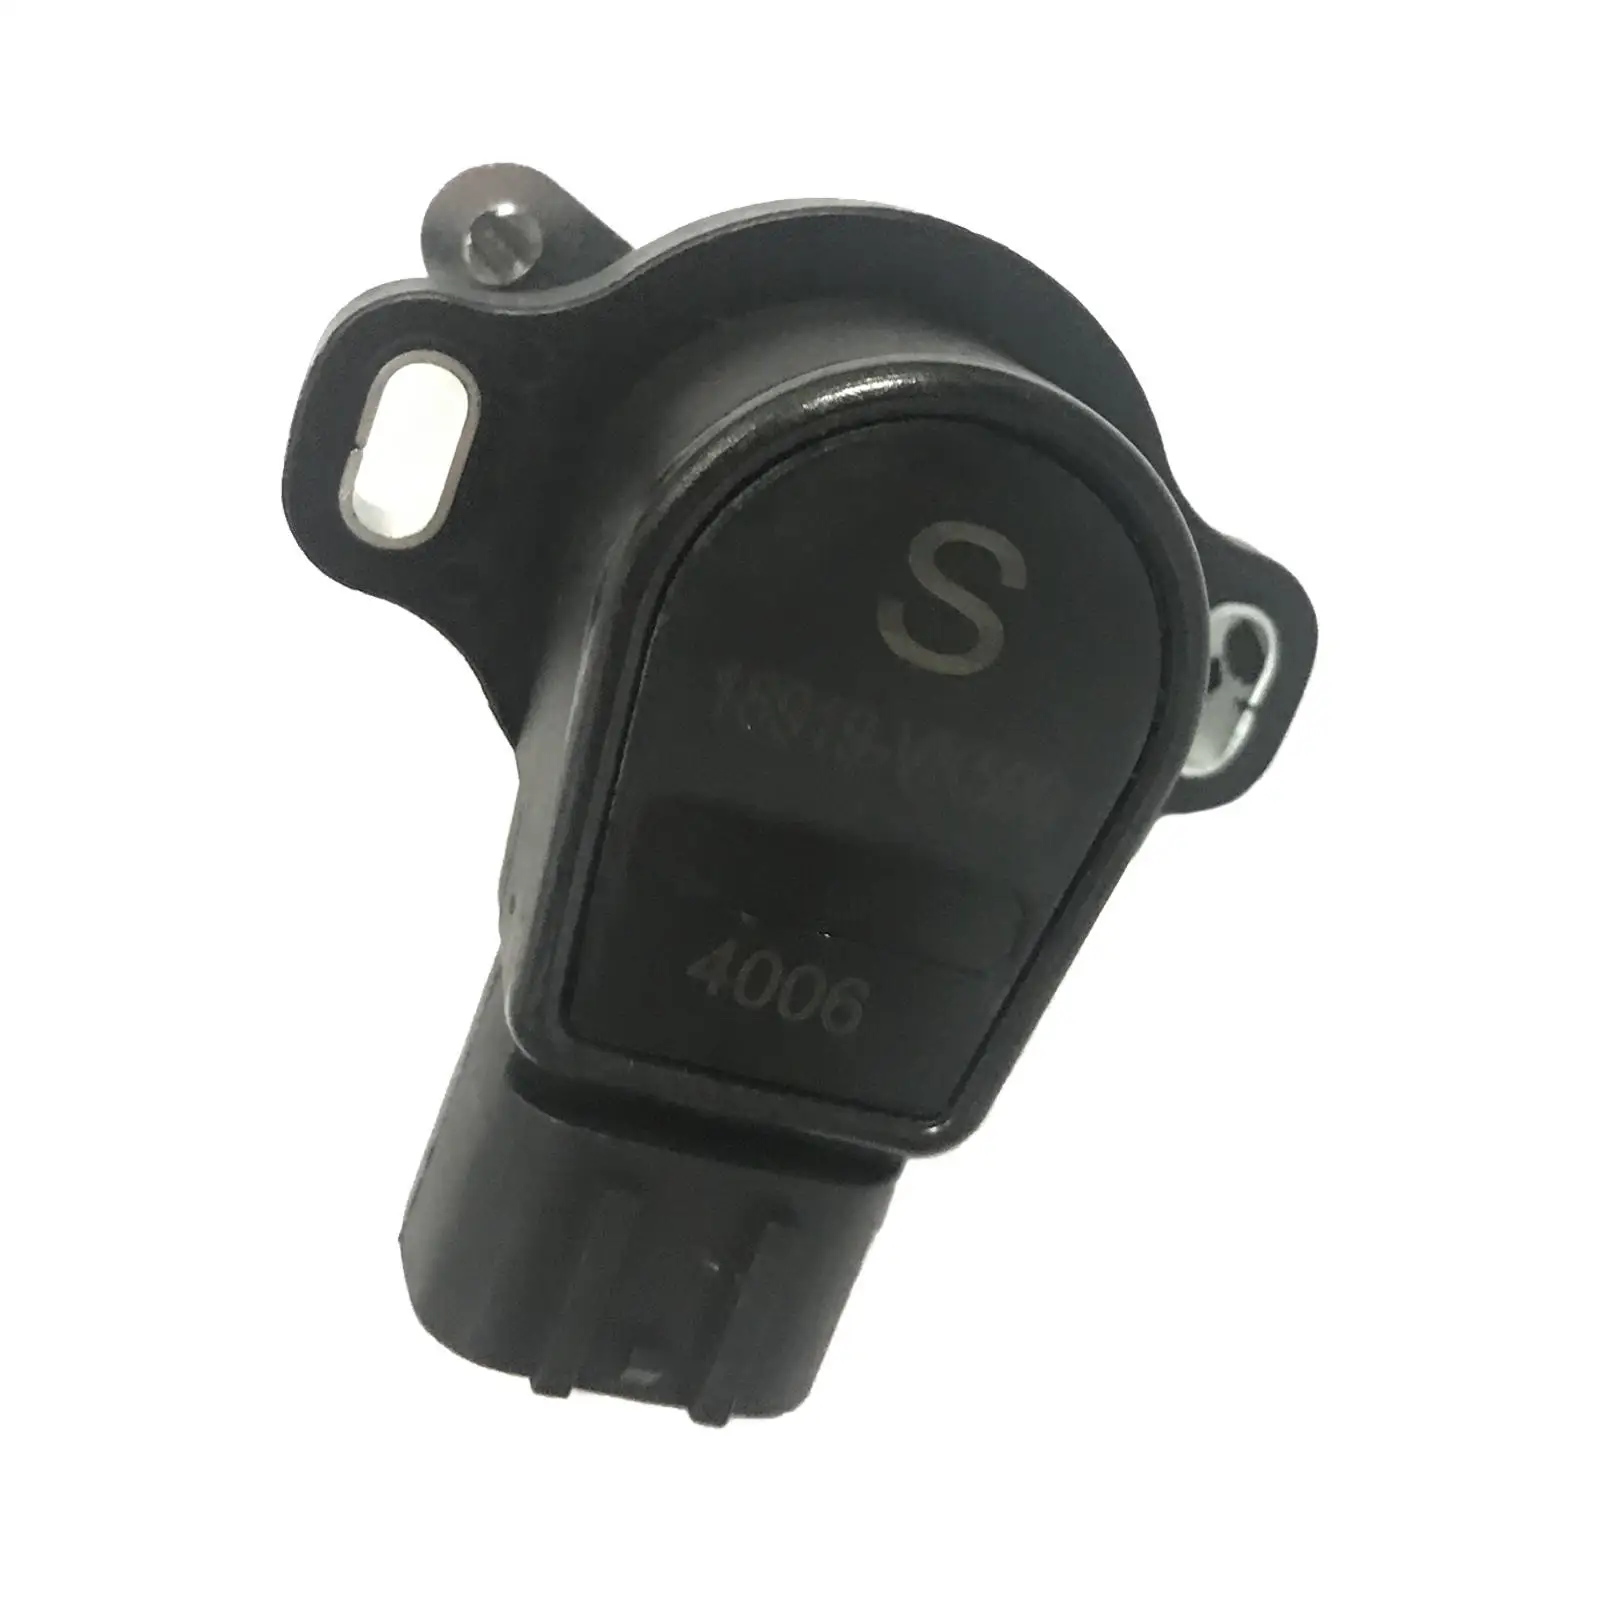 Car Throttle Position Sensor Plastic Fits for Pick-Up D22 2.5 350Z Car Part ACC Replacement 18919-Vk500 18919VK500